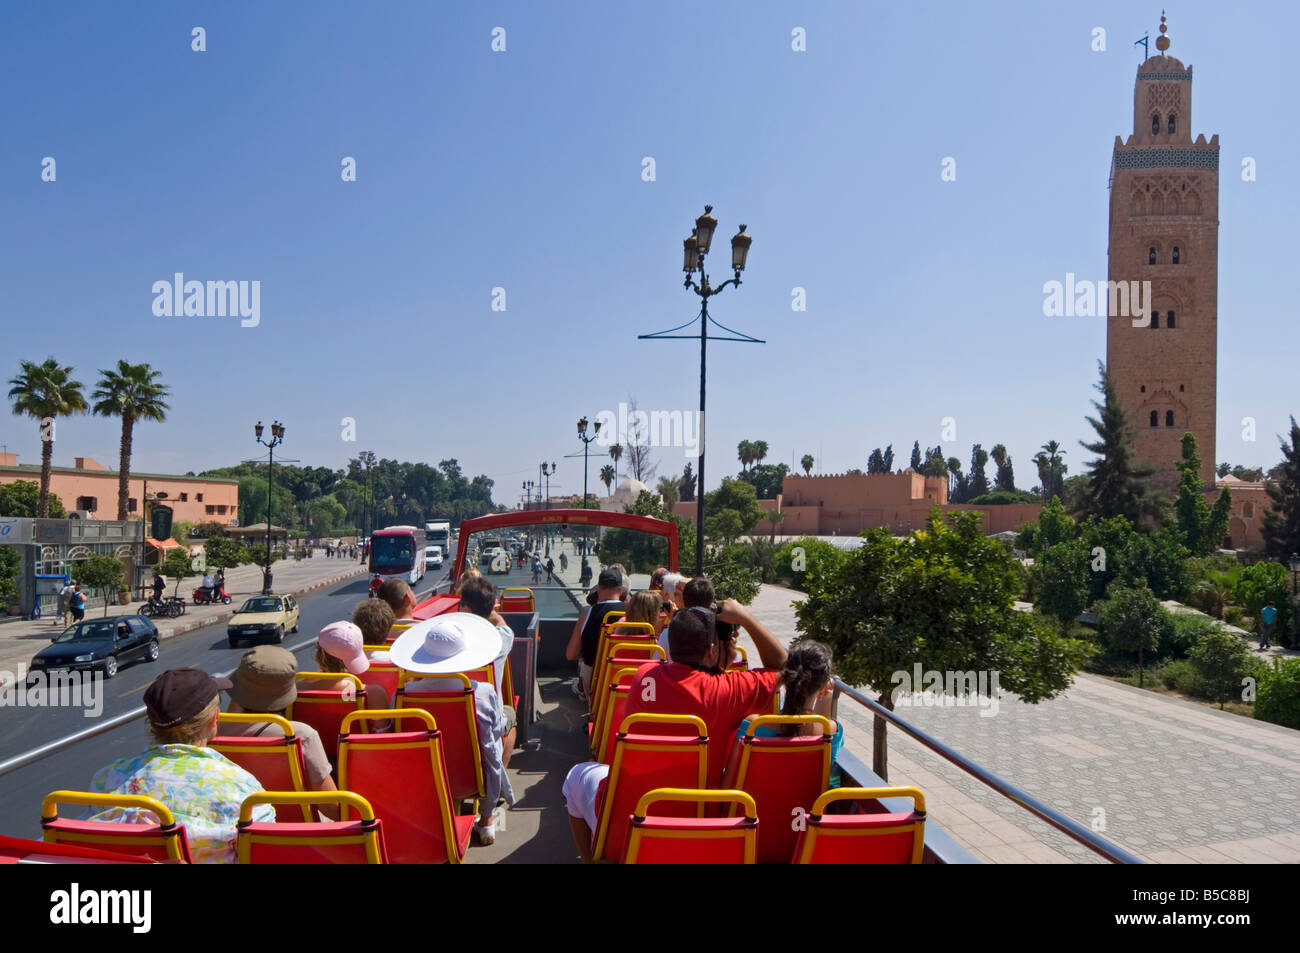 Il piano superiore di un organizzato autobus turistico tour intorno a Marrakech con la Moschea di Koutoubia minaret sulla destra. Foto Stock